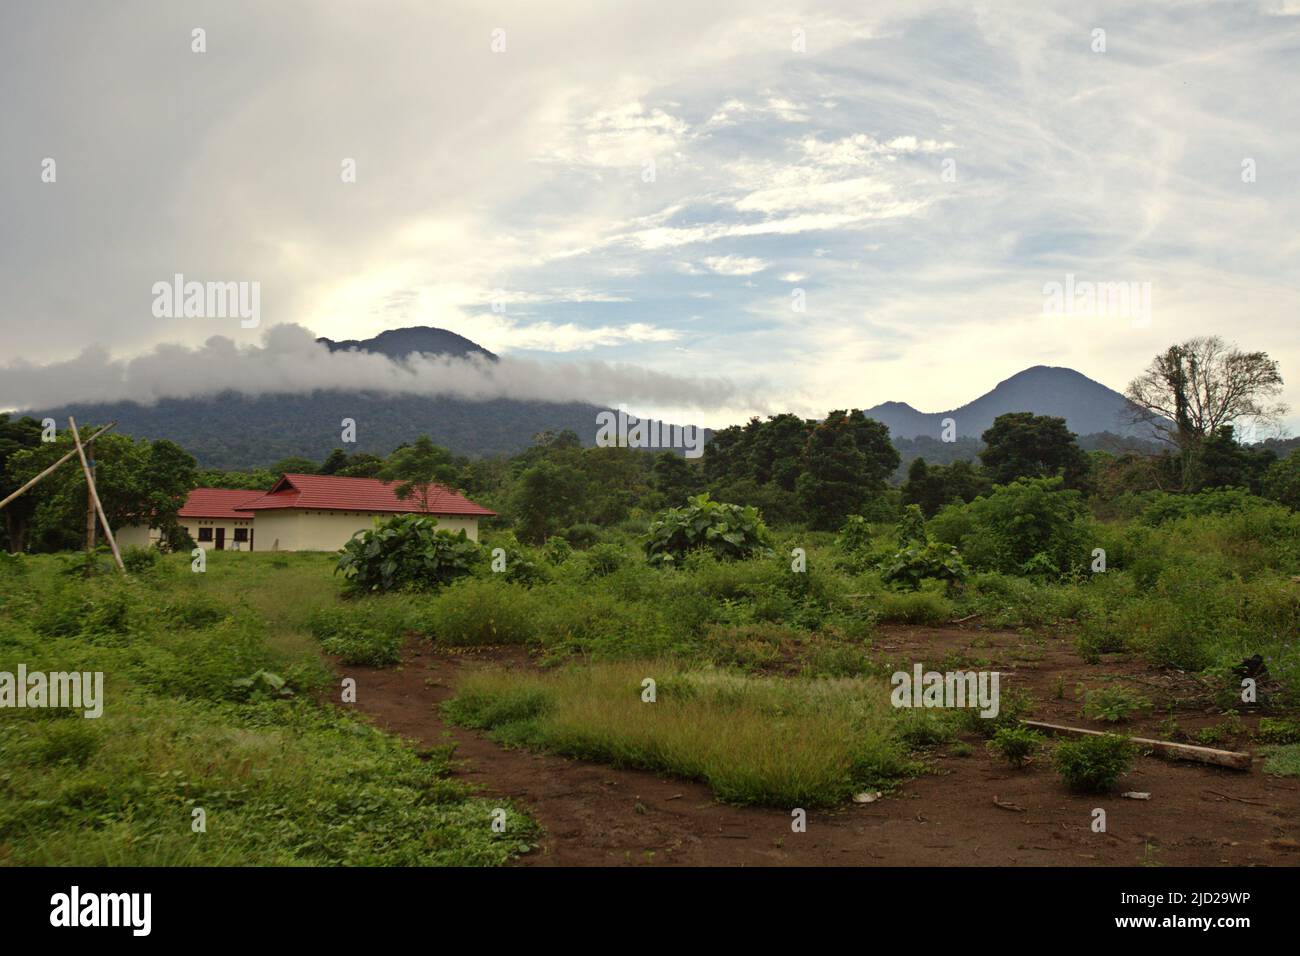 Der Berg Tangkoko (links) und der Berg Dua Saudara, der zusammen mit dem Berg Batuangus (ohne Abbildung) die Kernzonen des Tangkoko Batuangus Nature Reserve (Tangkoko-Batuangus Dua Saudara Nature Reserve) sind, fotografiert im Vordergrund einer Einrichtung für das Management von Naturtourismus in Nord-Sulawesi, Indonesien. Stockfoto